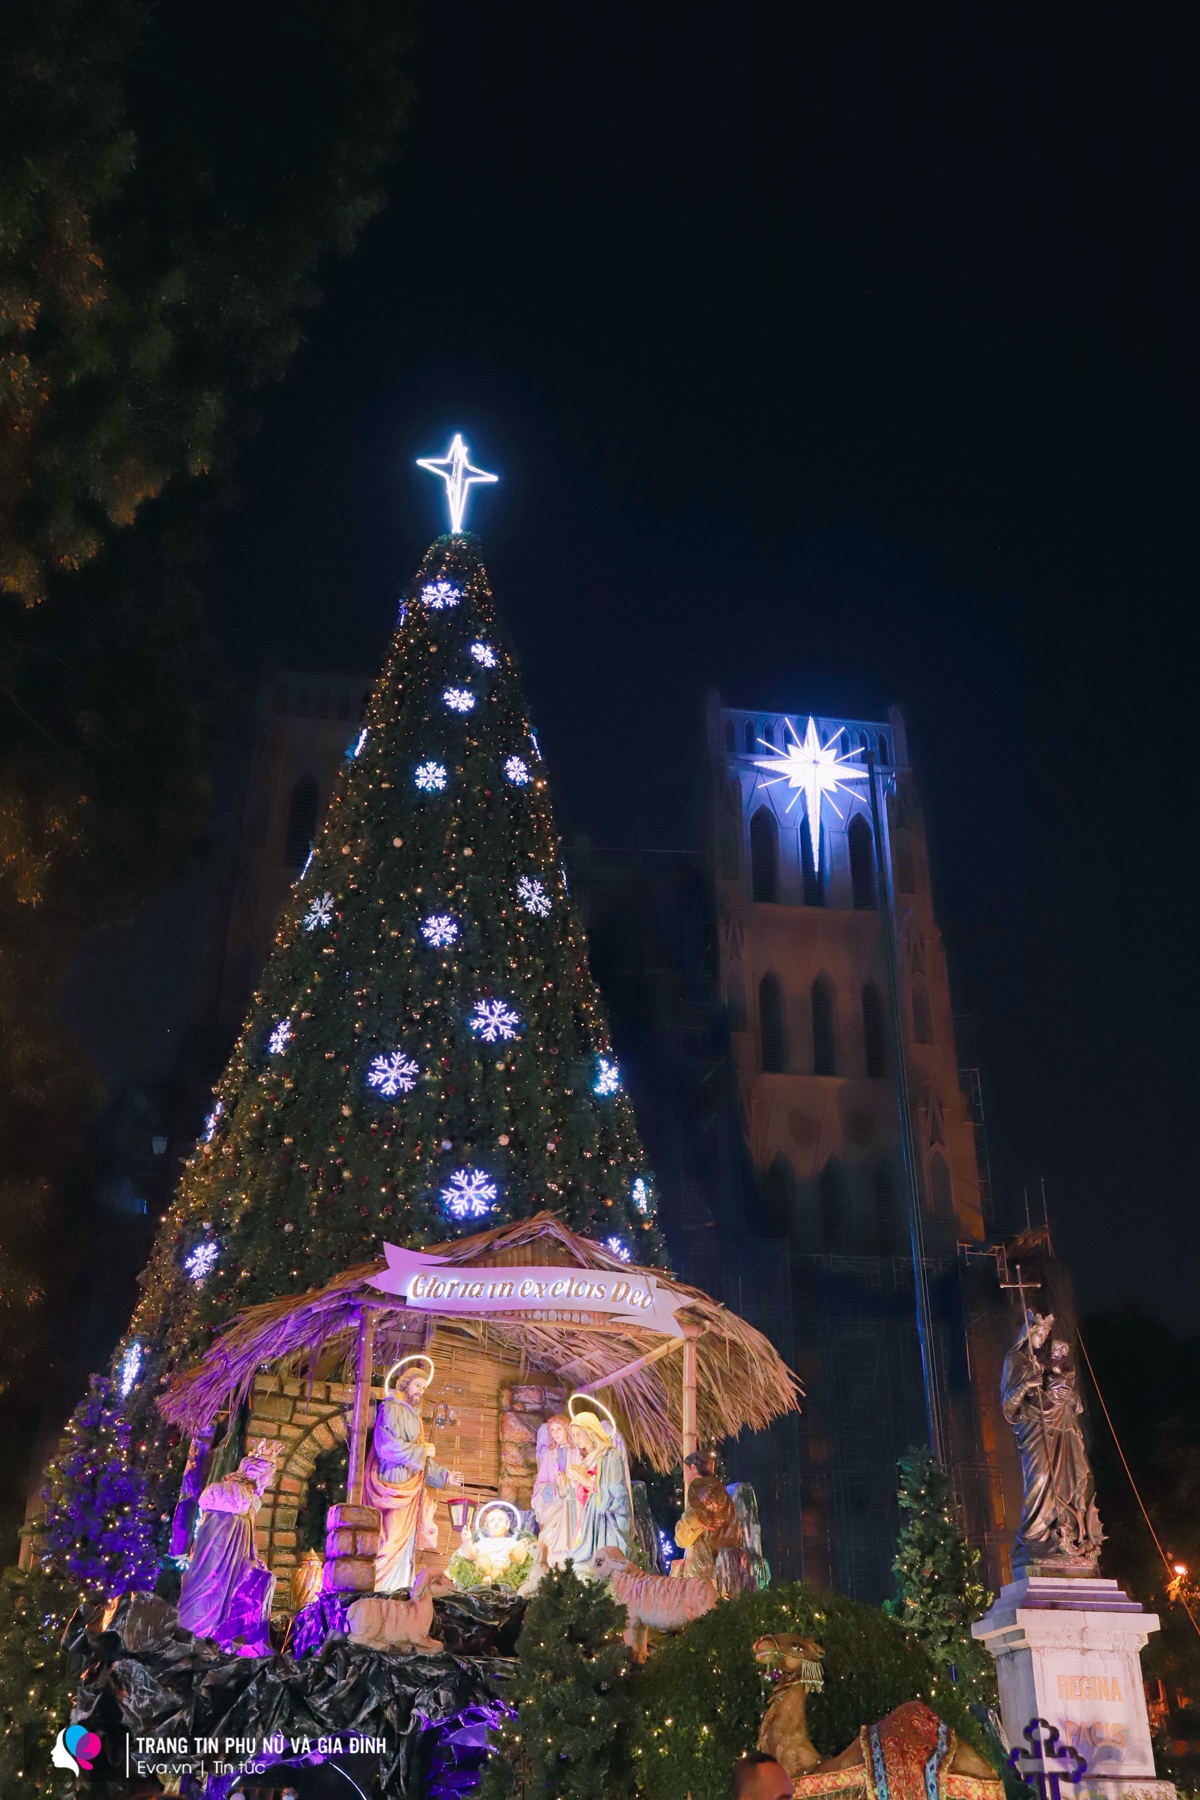 Nhà thờ lớn Hà Nội vẫn luôn là địa điểm được yêu thích nhất mỗi dịp Noel. Dù năm nay nhà thờ đang được tu sửa lại nhưng bên ngoài vẫn trang trí cây thông Noel hoành tráng, thu hút nhiều người tới dạo chơi, chụp ảnh.